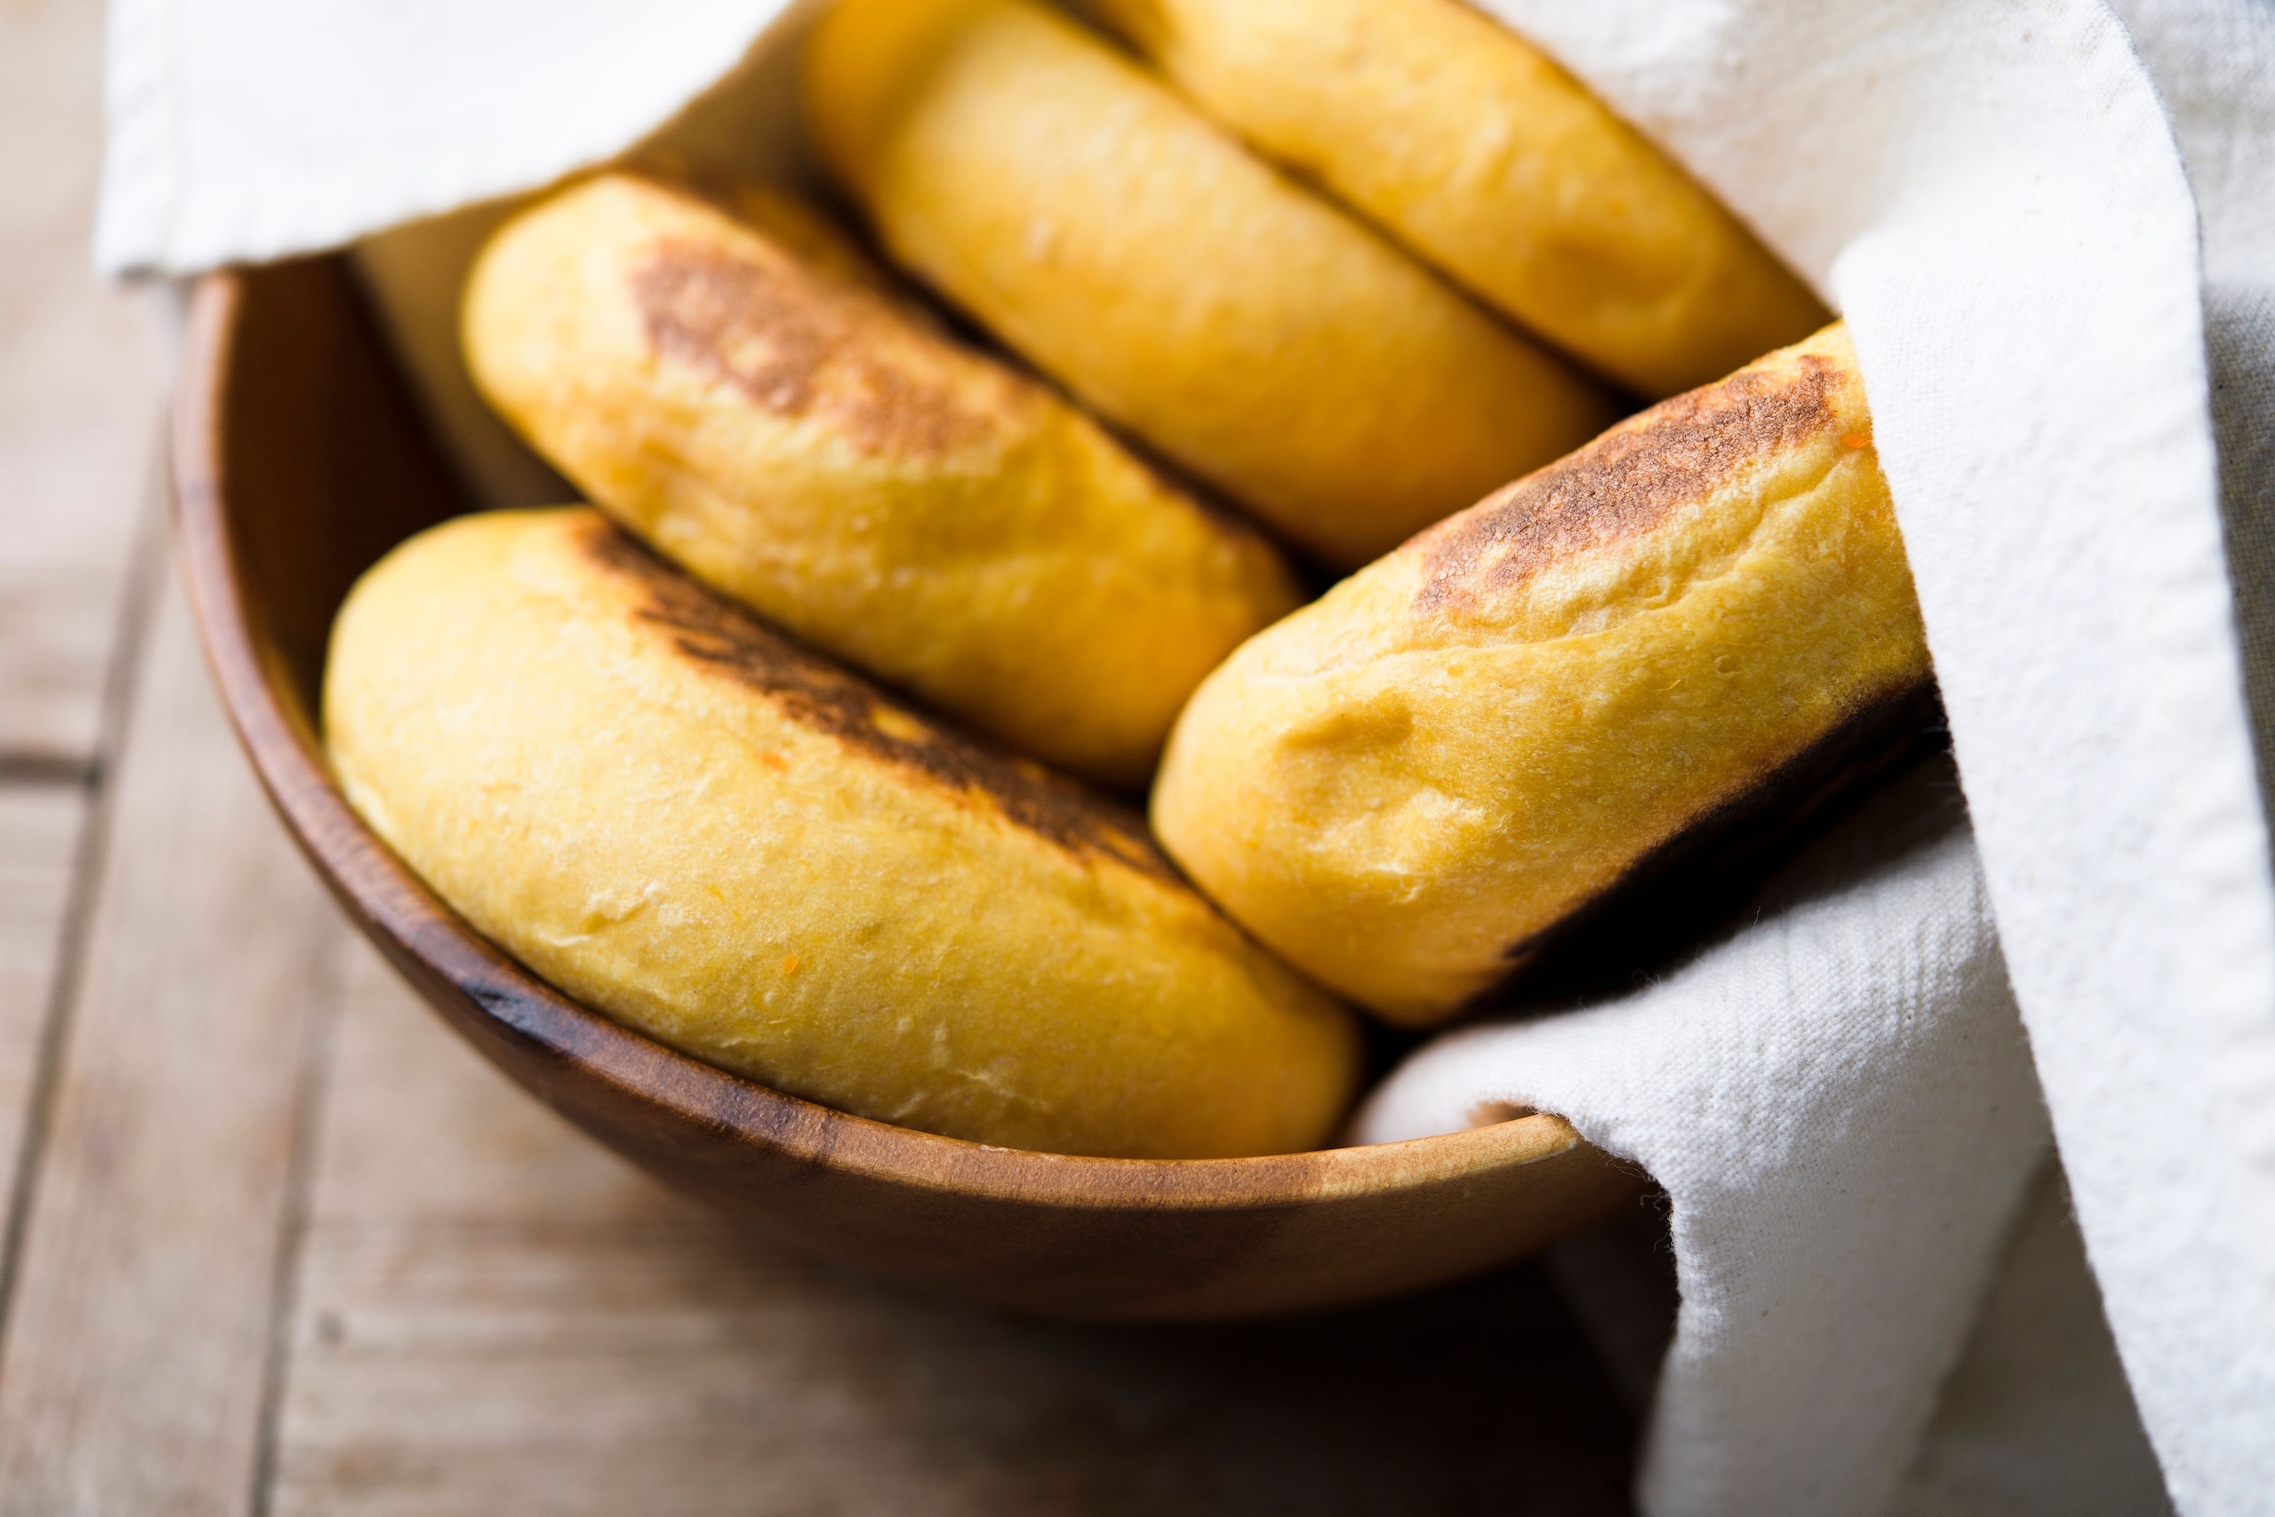 https://www.177milkstreet.com/assets/site/portuguese-style-sweet-potato-rolls-h.jpg